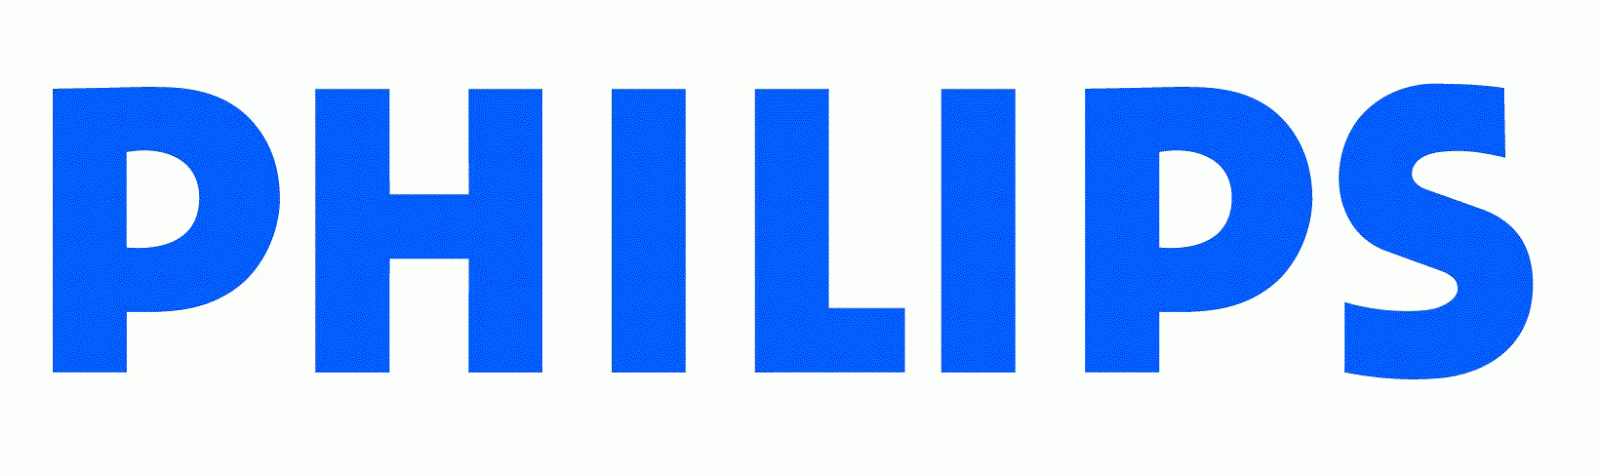 El logo de Philips en imágenes